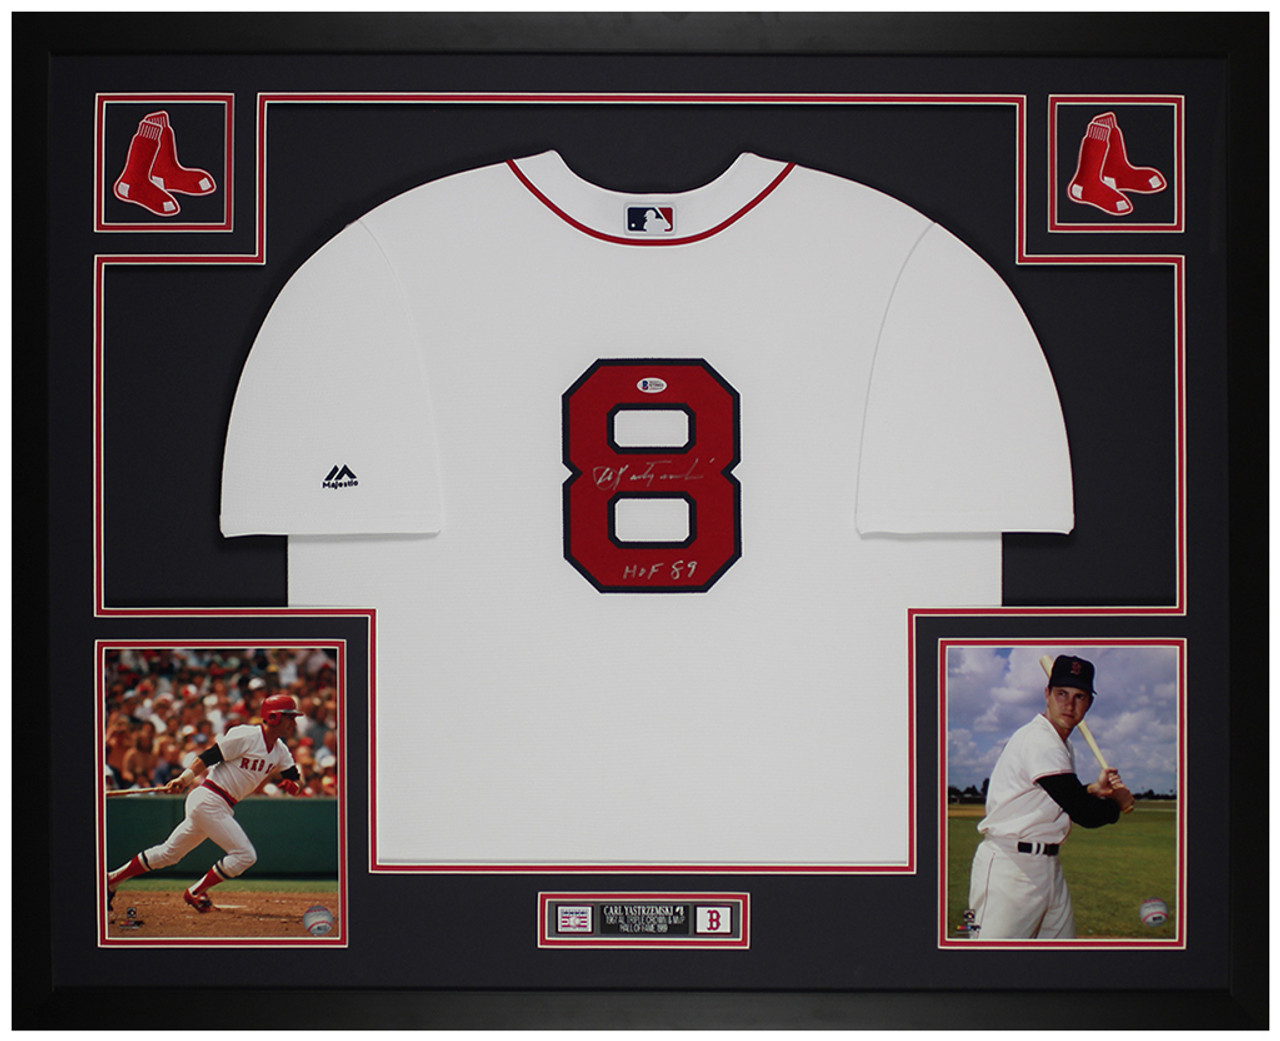 Carl Yastrzemski Autographed and Framed Boston Red Sox Jersey